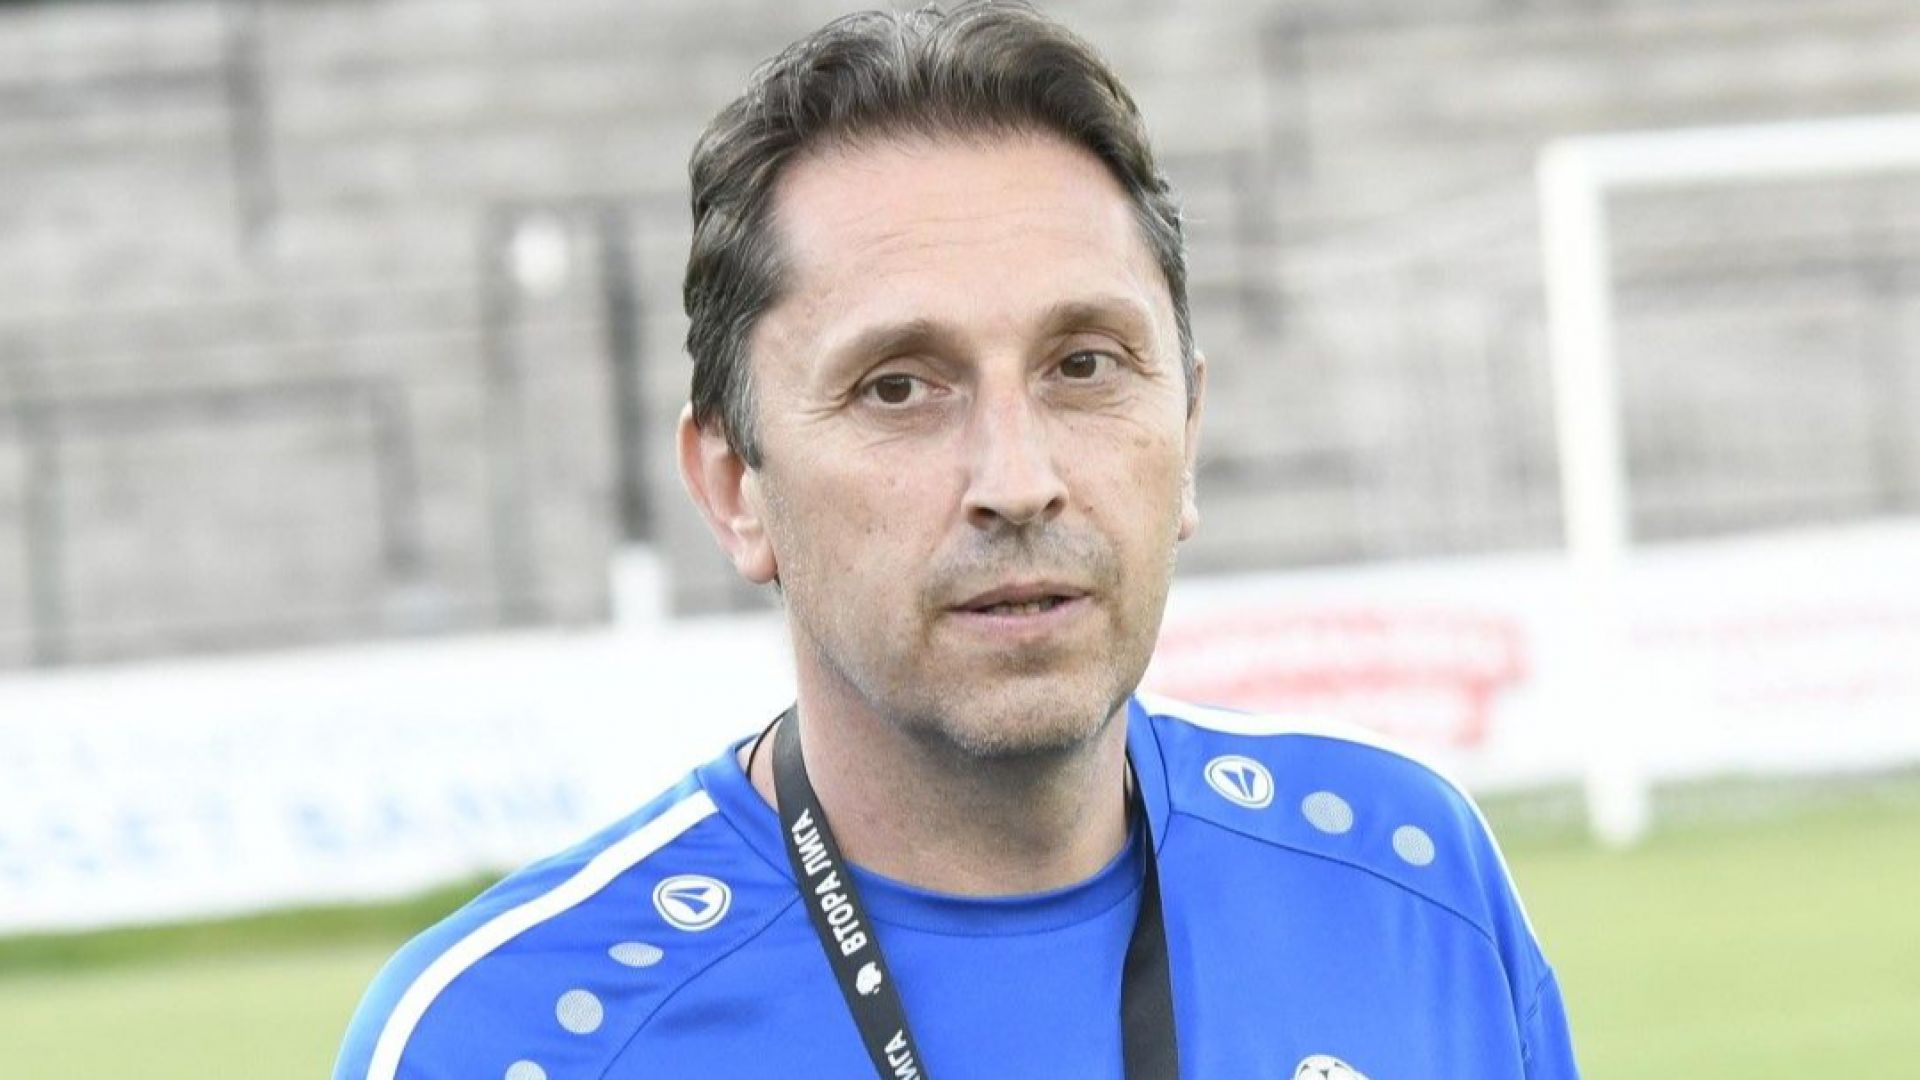 Треньорът на Добруджа си тръгва с ясен намек за нечестна игра във Втора лига